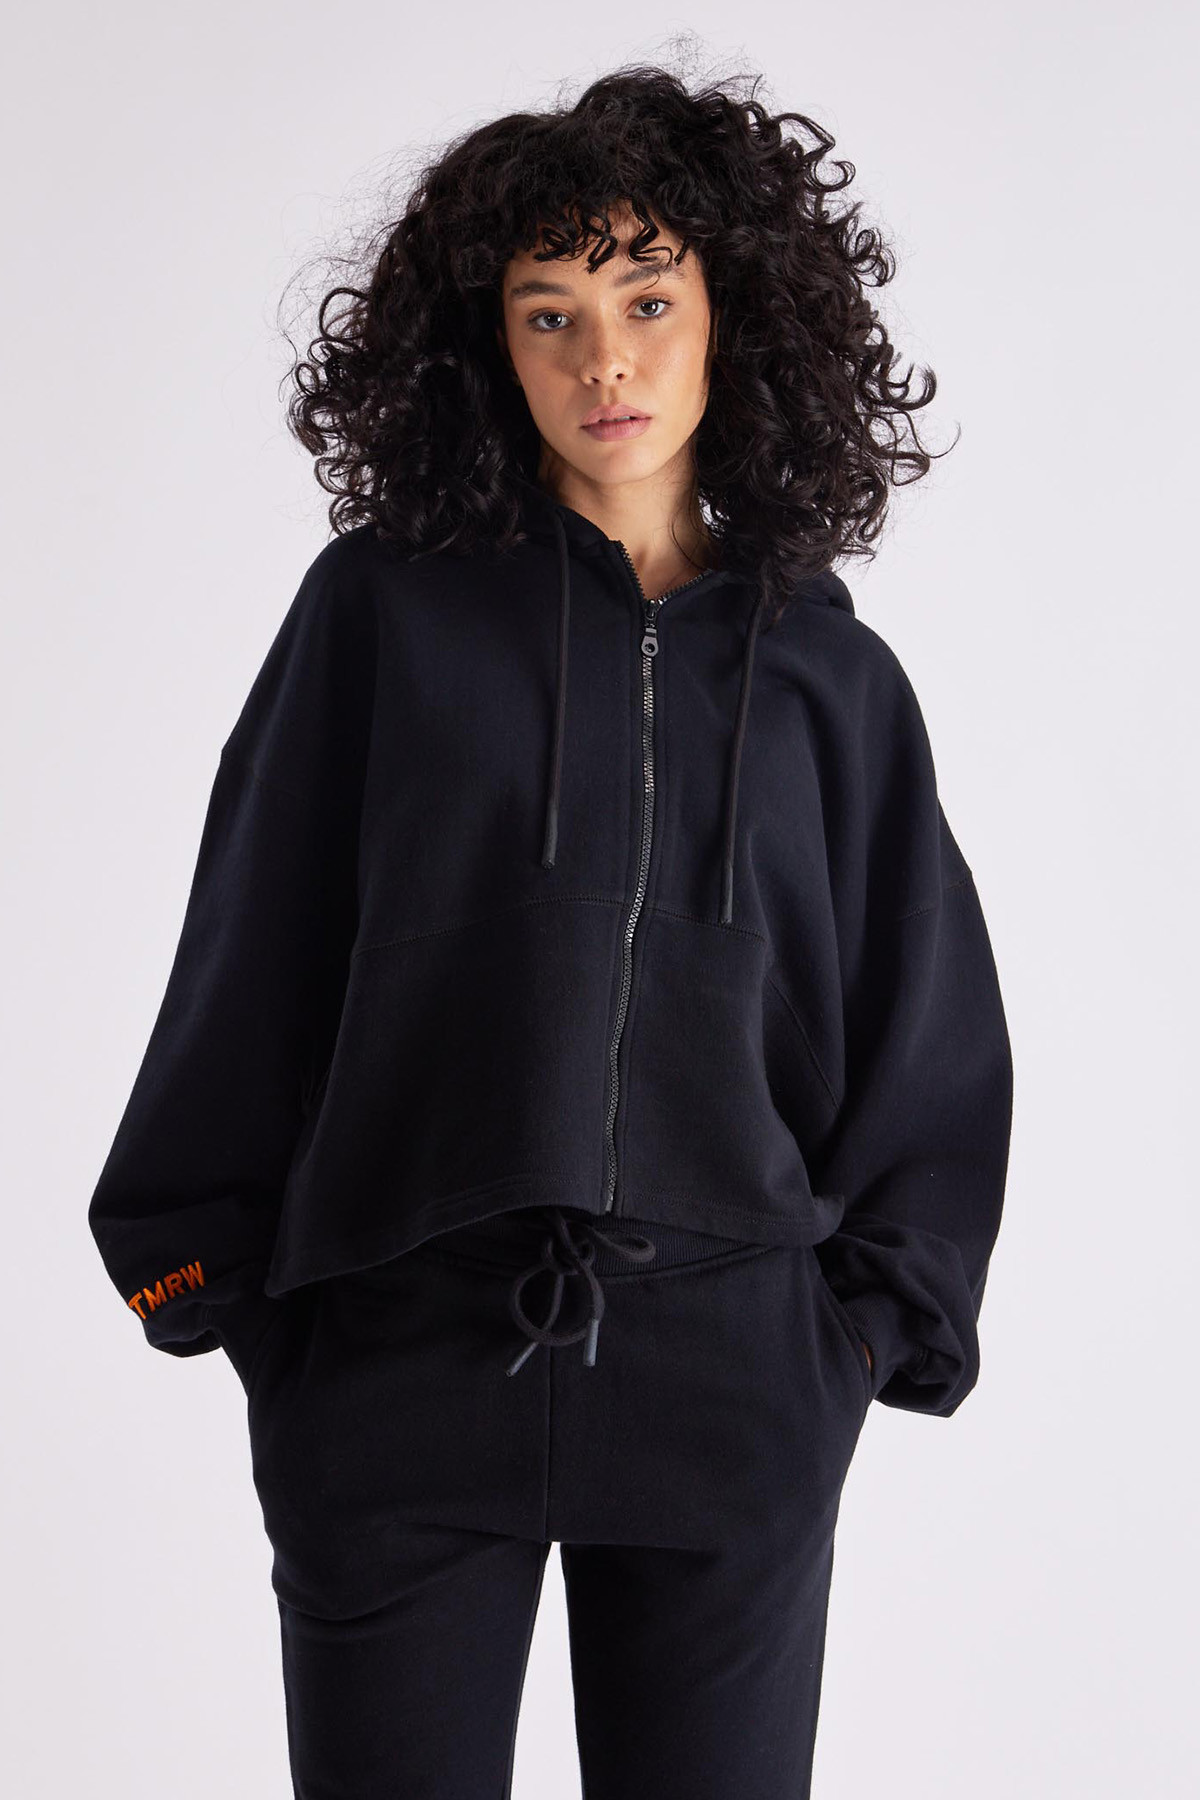 Black women's AMANDA GertrudeGaston zip-up hoodie, long sleeves